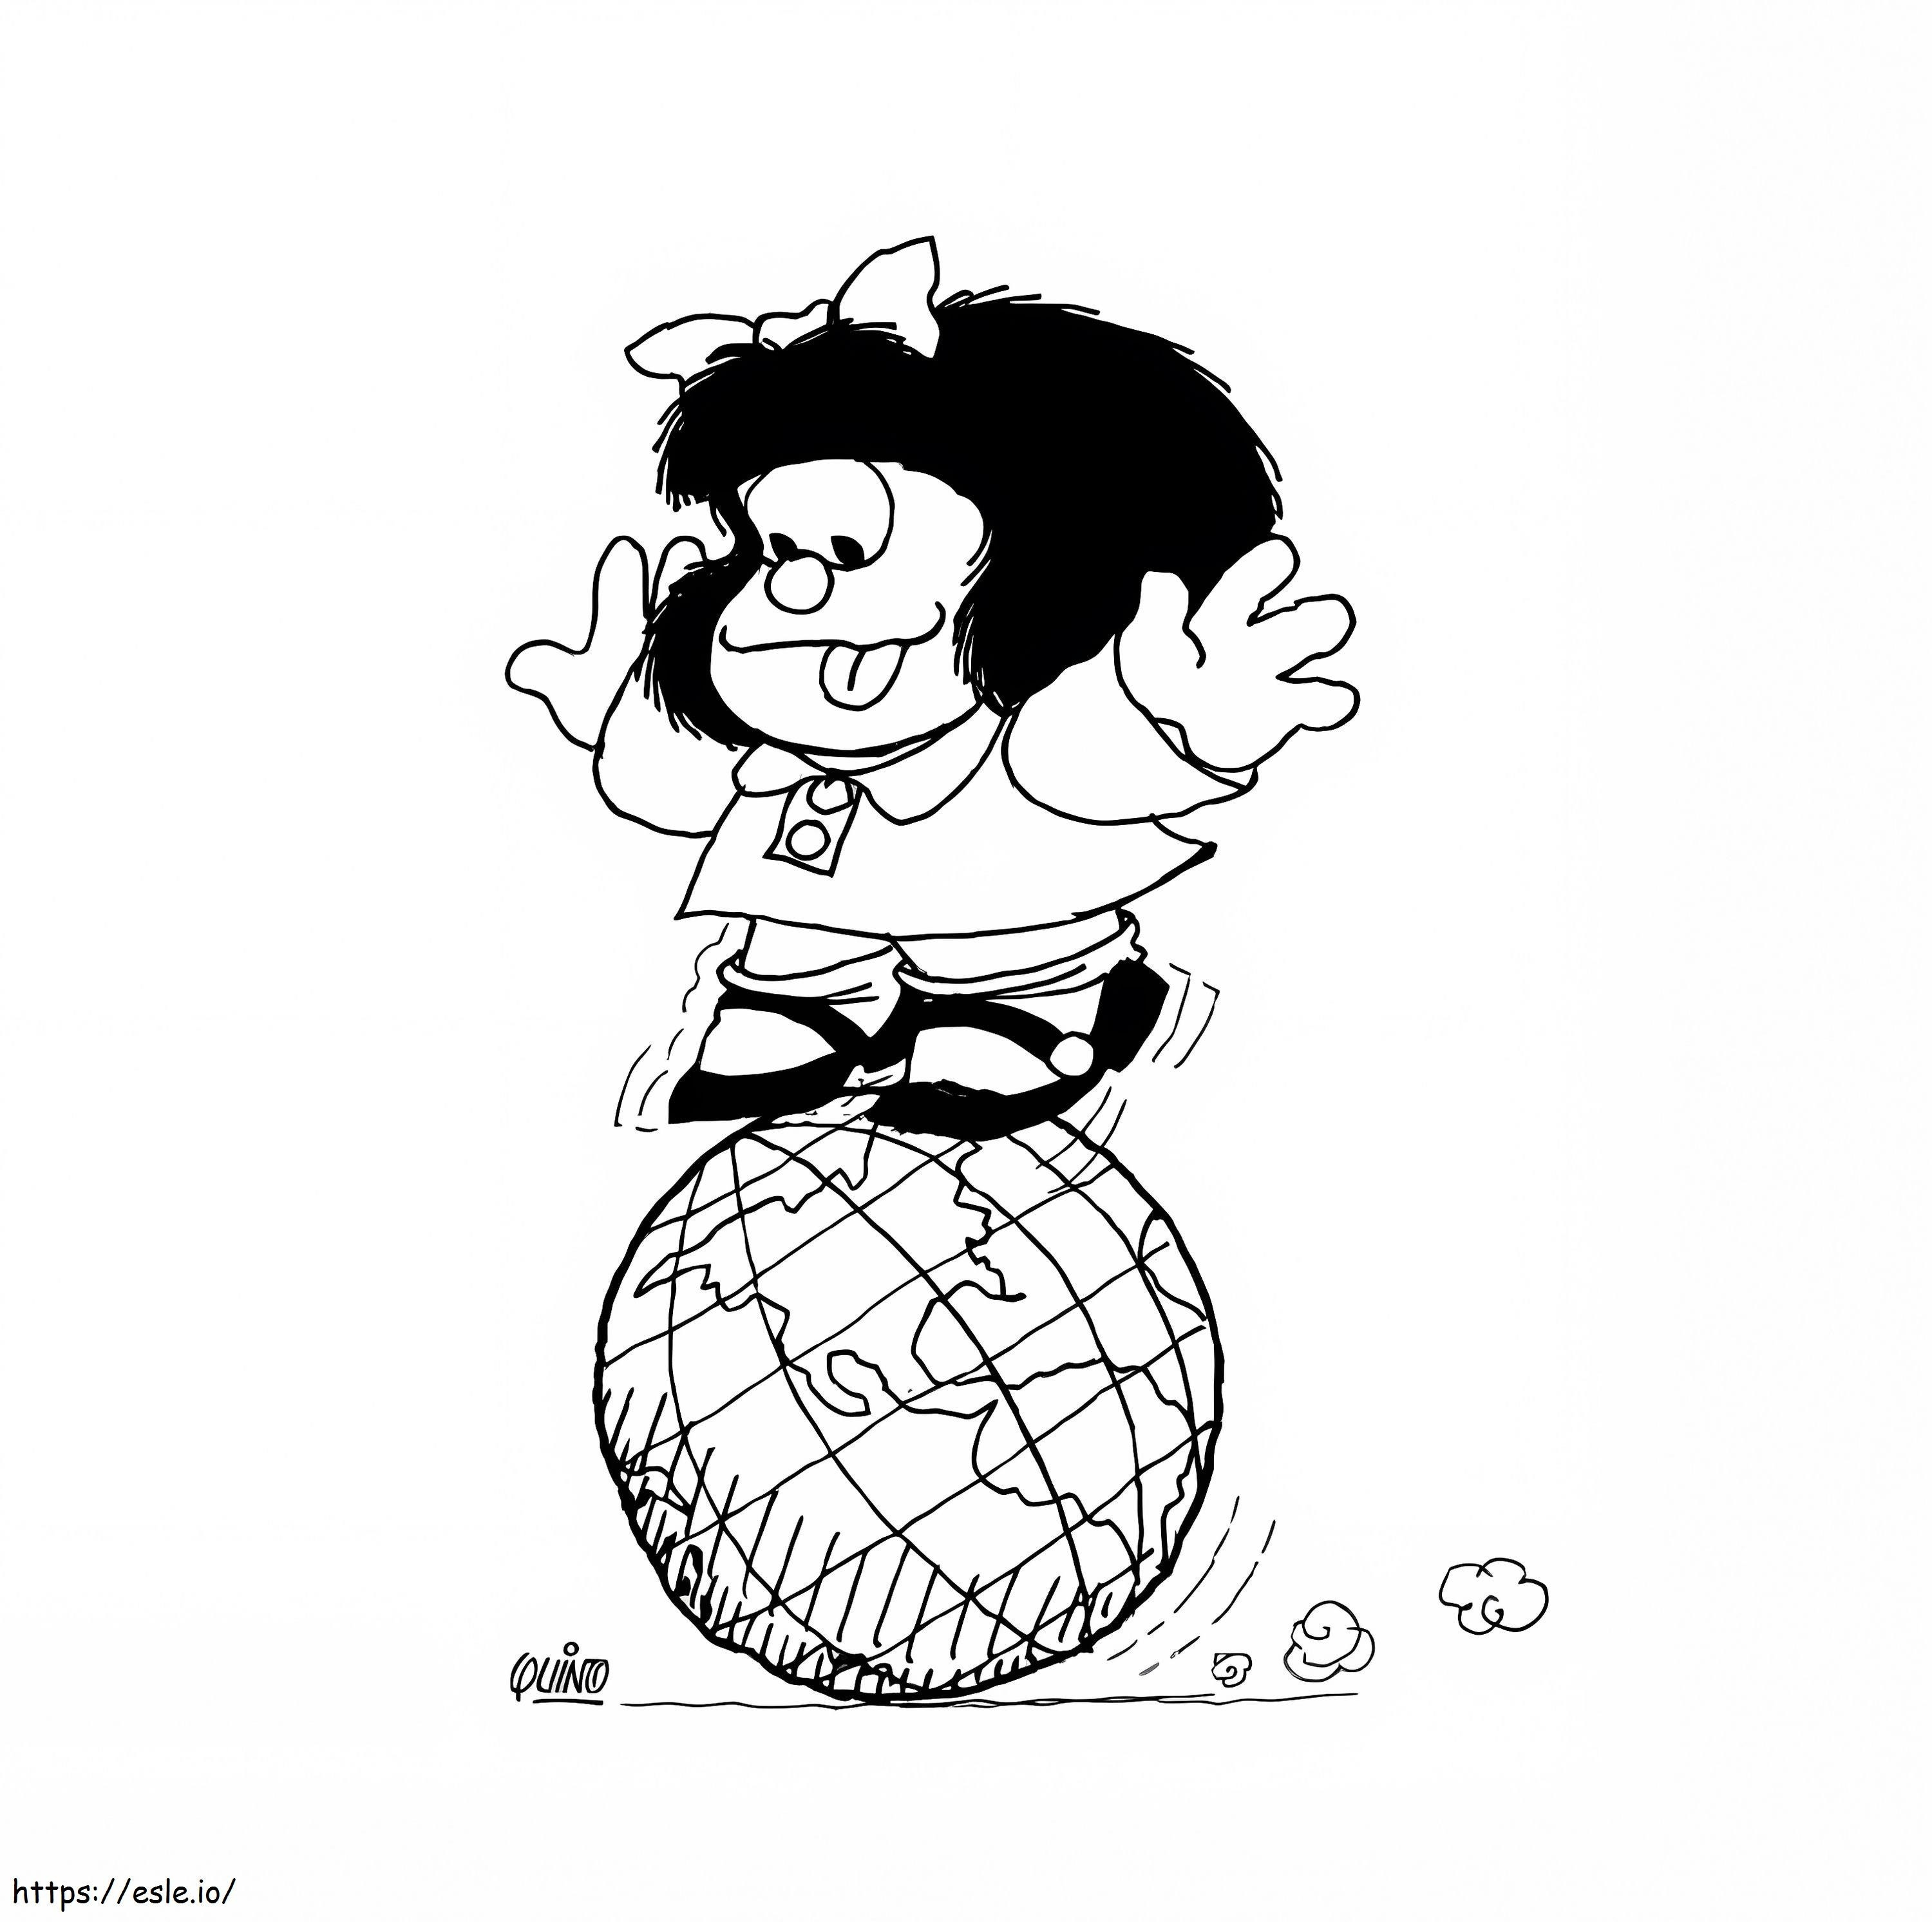 Mafalda și Globul de colorat